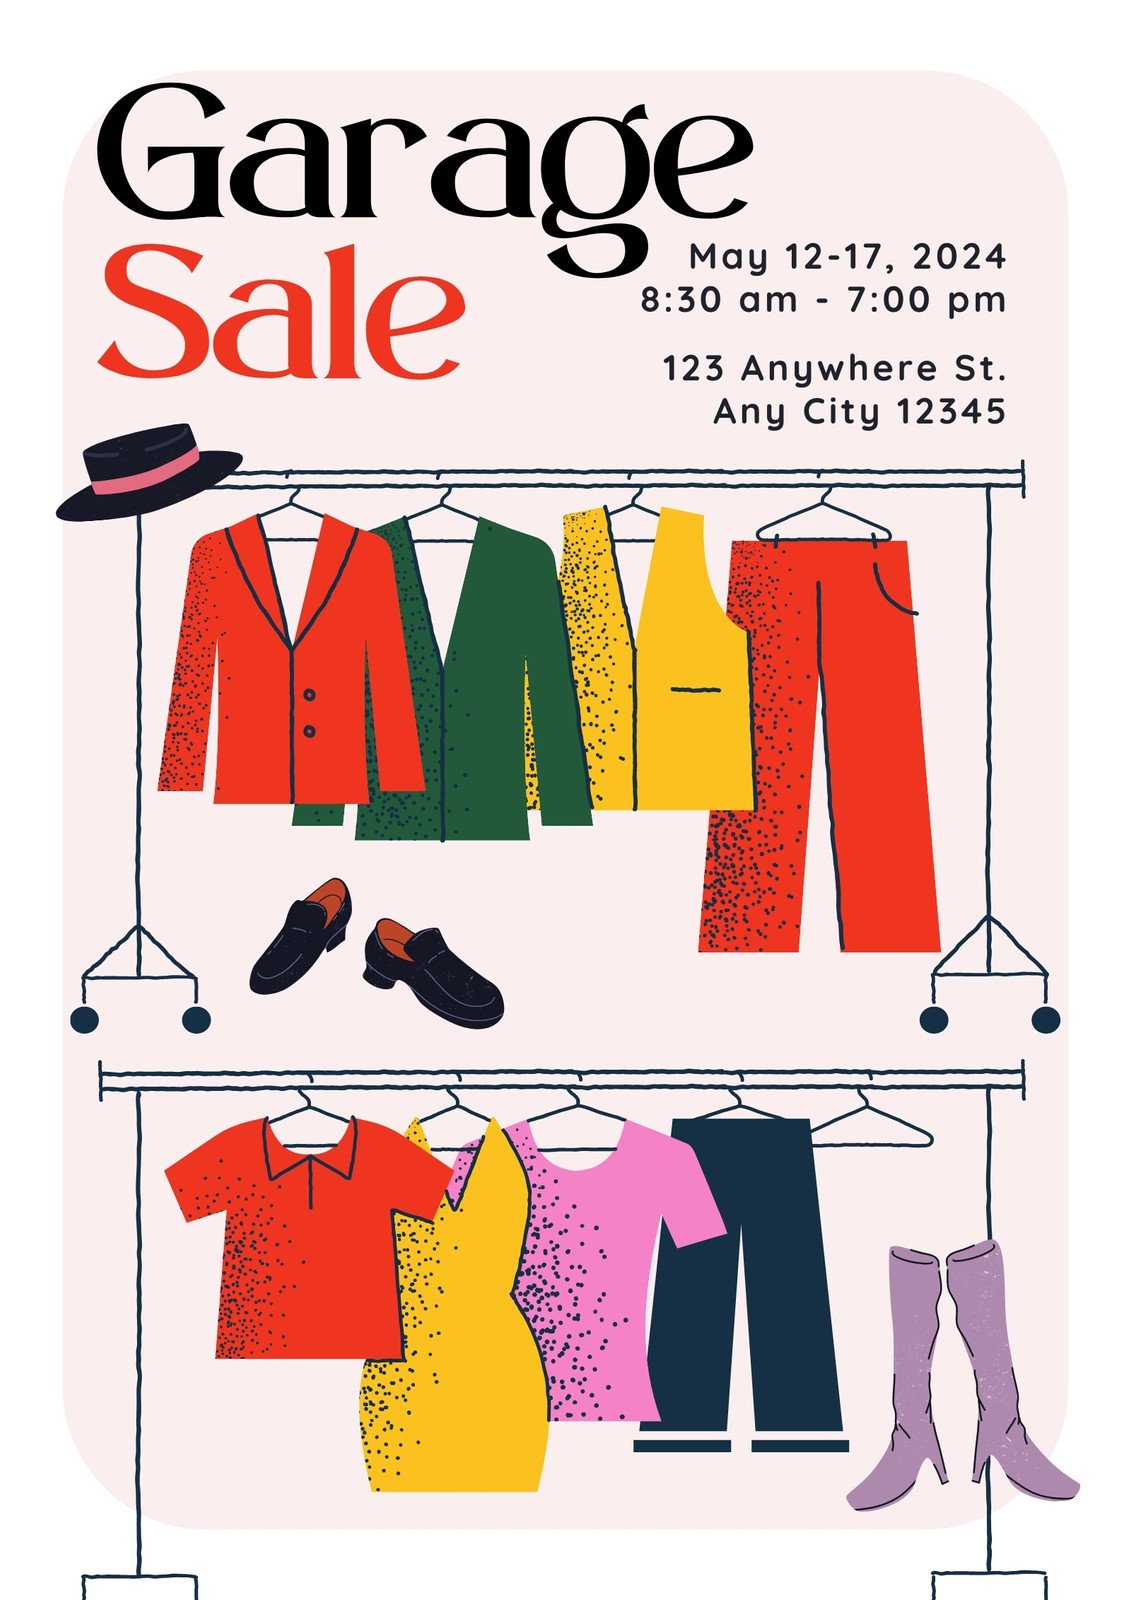 clothes sale